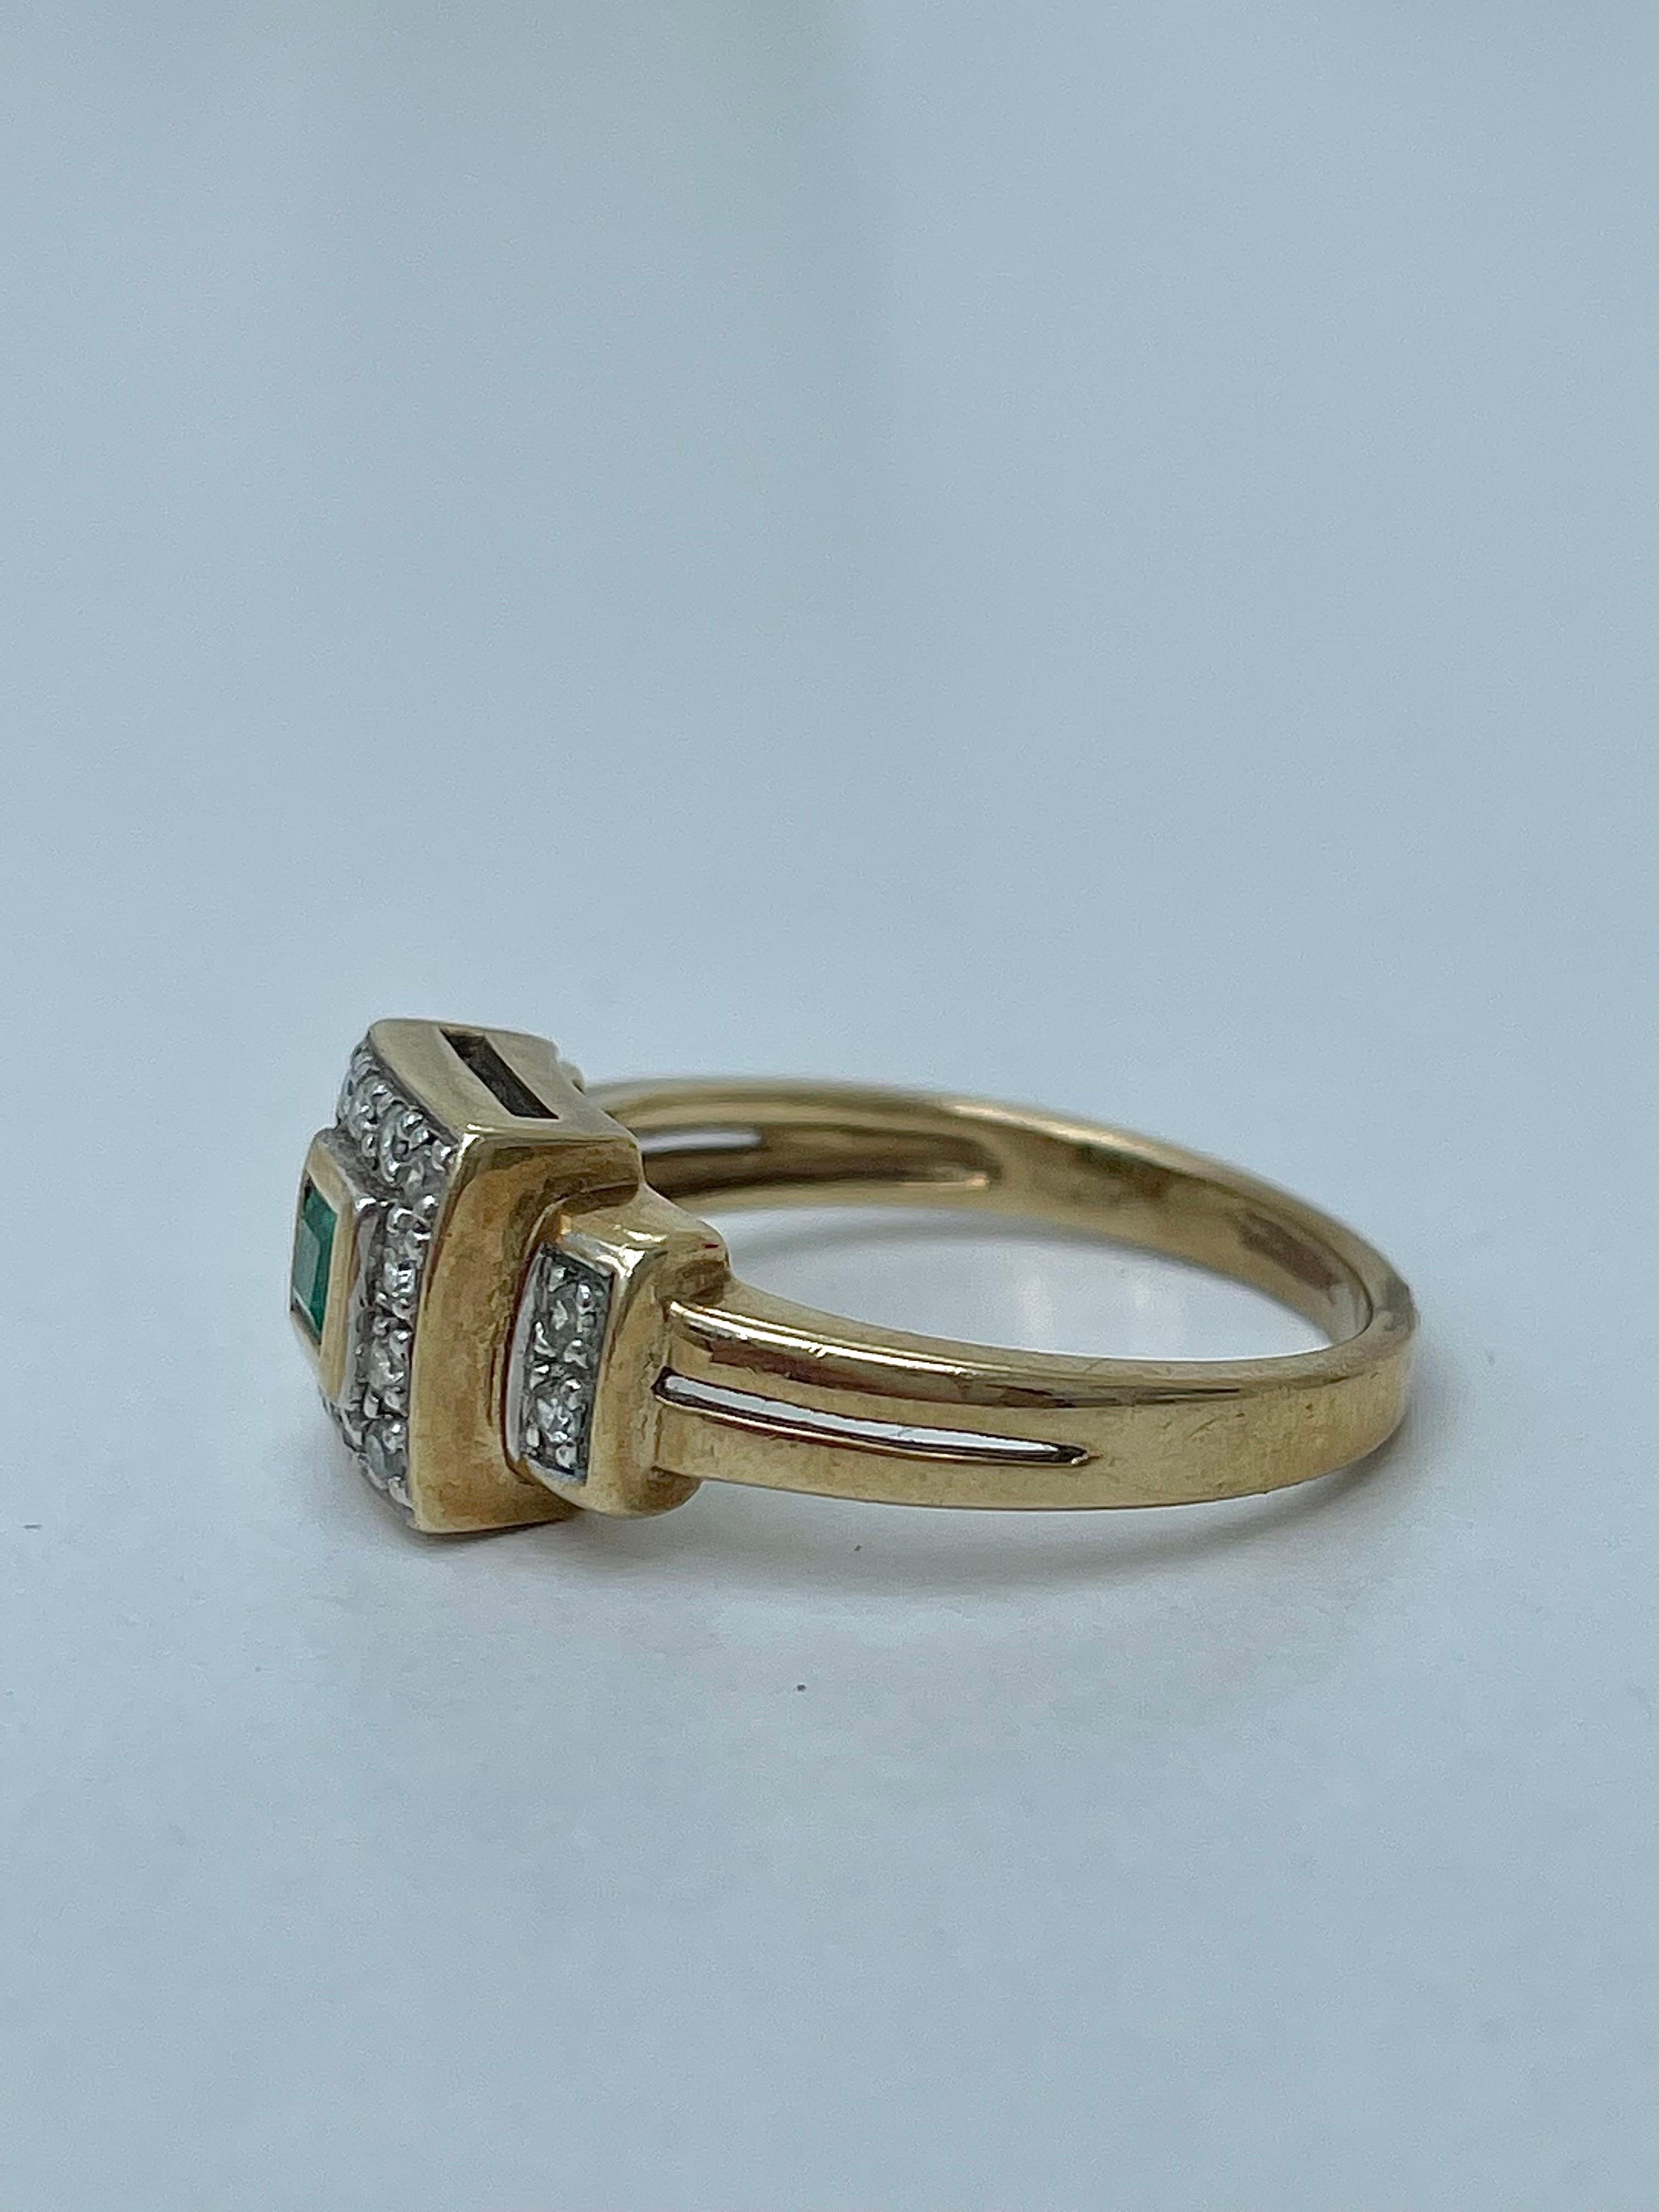 Vintage 9ct Gelbgold Smaragd und Diamant Quadratischer Ring 

der exquisiteste Ring mit Diamanten und Smaragden, die Details sind hervorragend 

Der Artikel kommt ohne die Box auf den Fotos, sondern wird in einem Geschenkkarton präsentiert